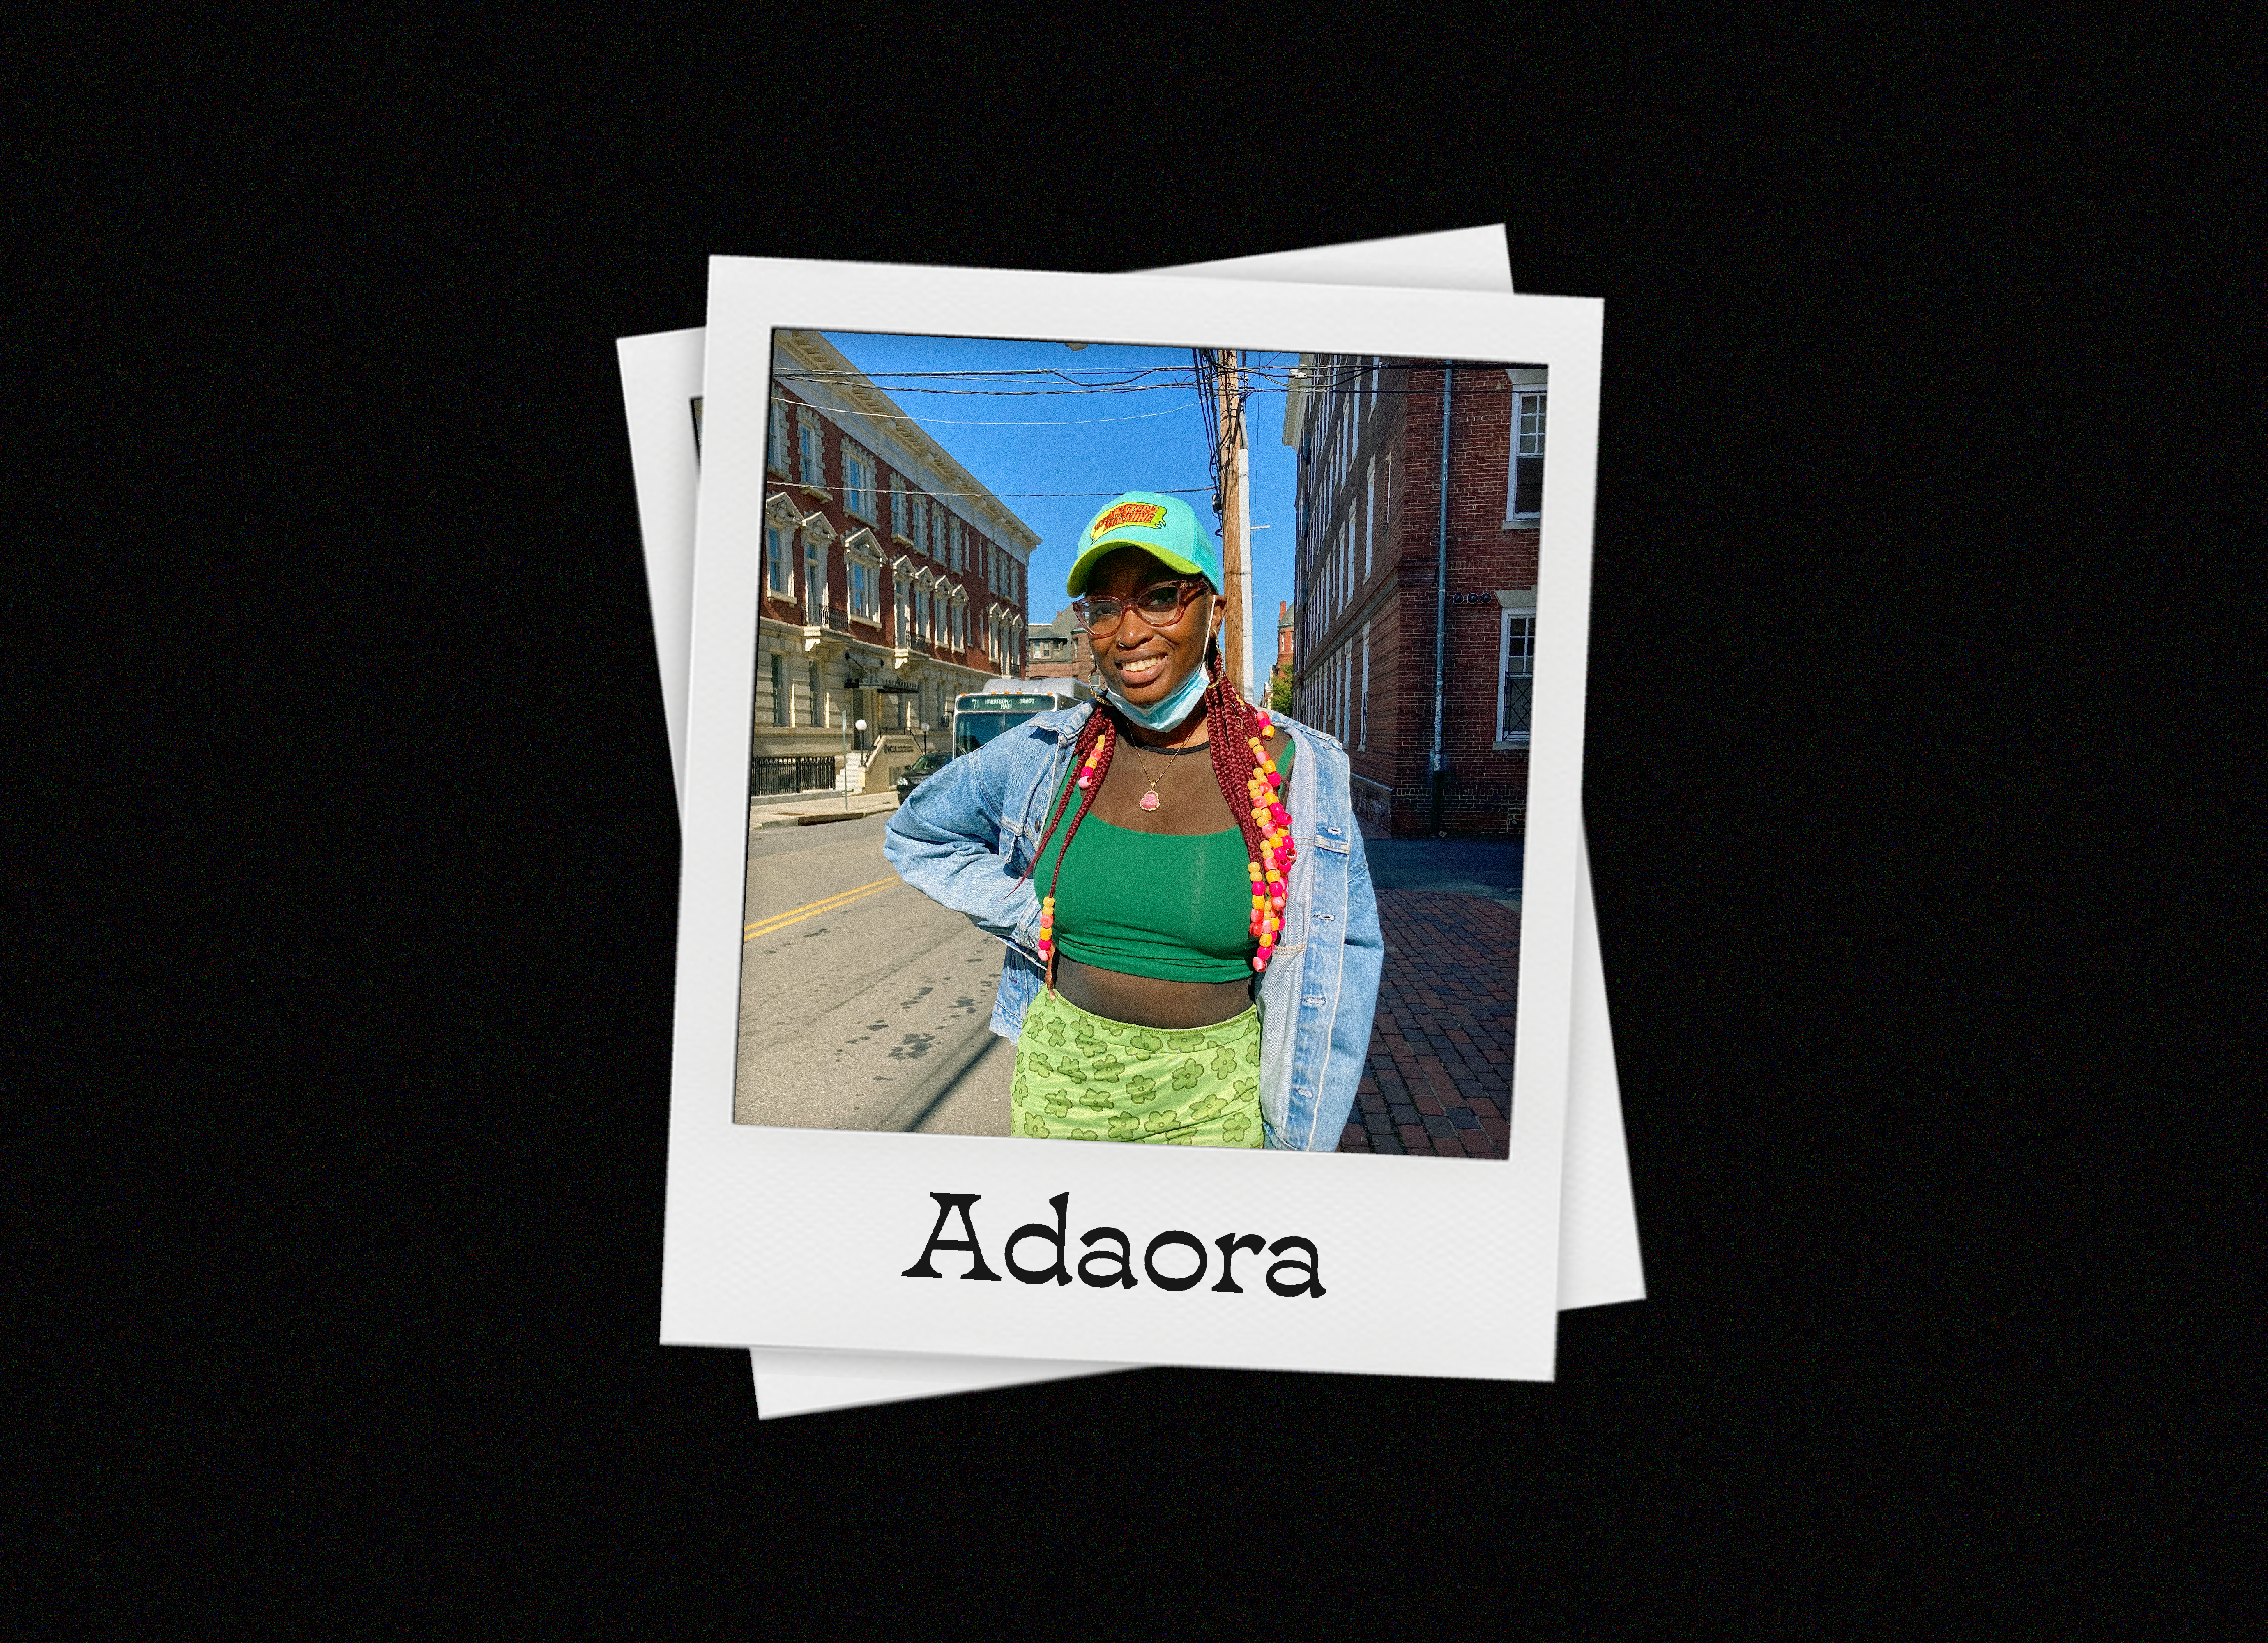 Meet RVA: Adaora